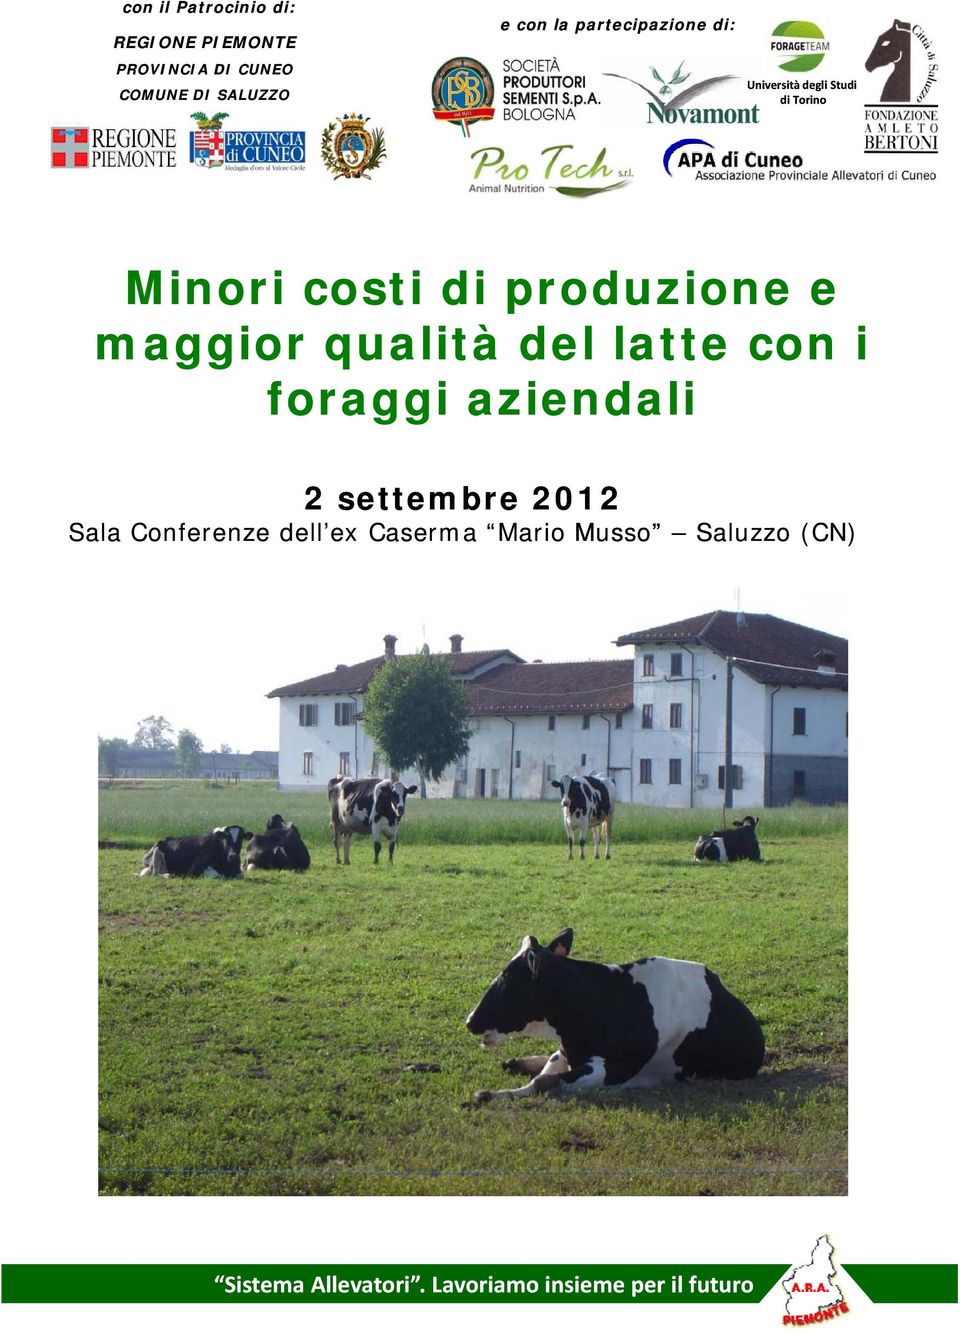 maggior qualità del latte con i foraggi aziendali 2 settembre 2012 Sala Conferenze